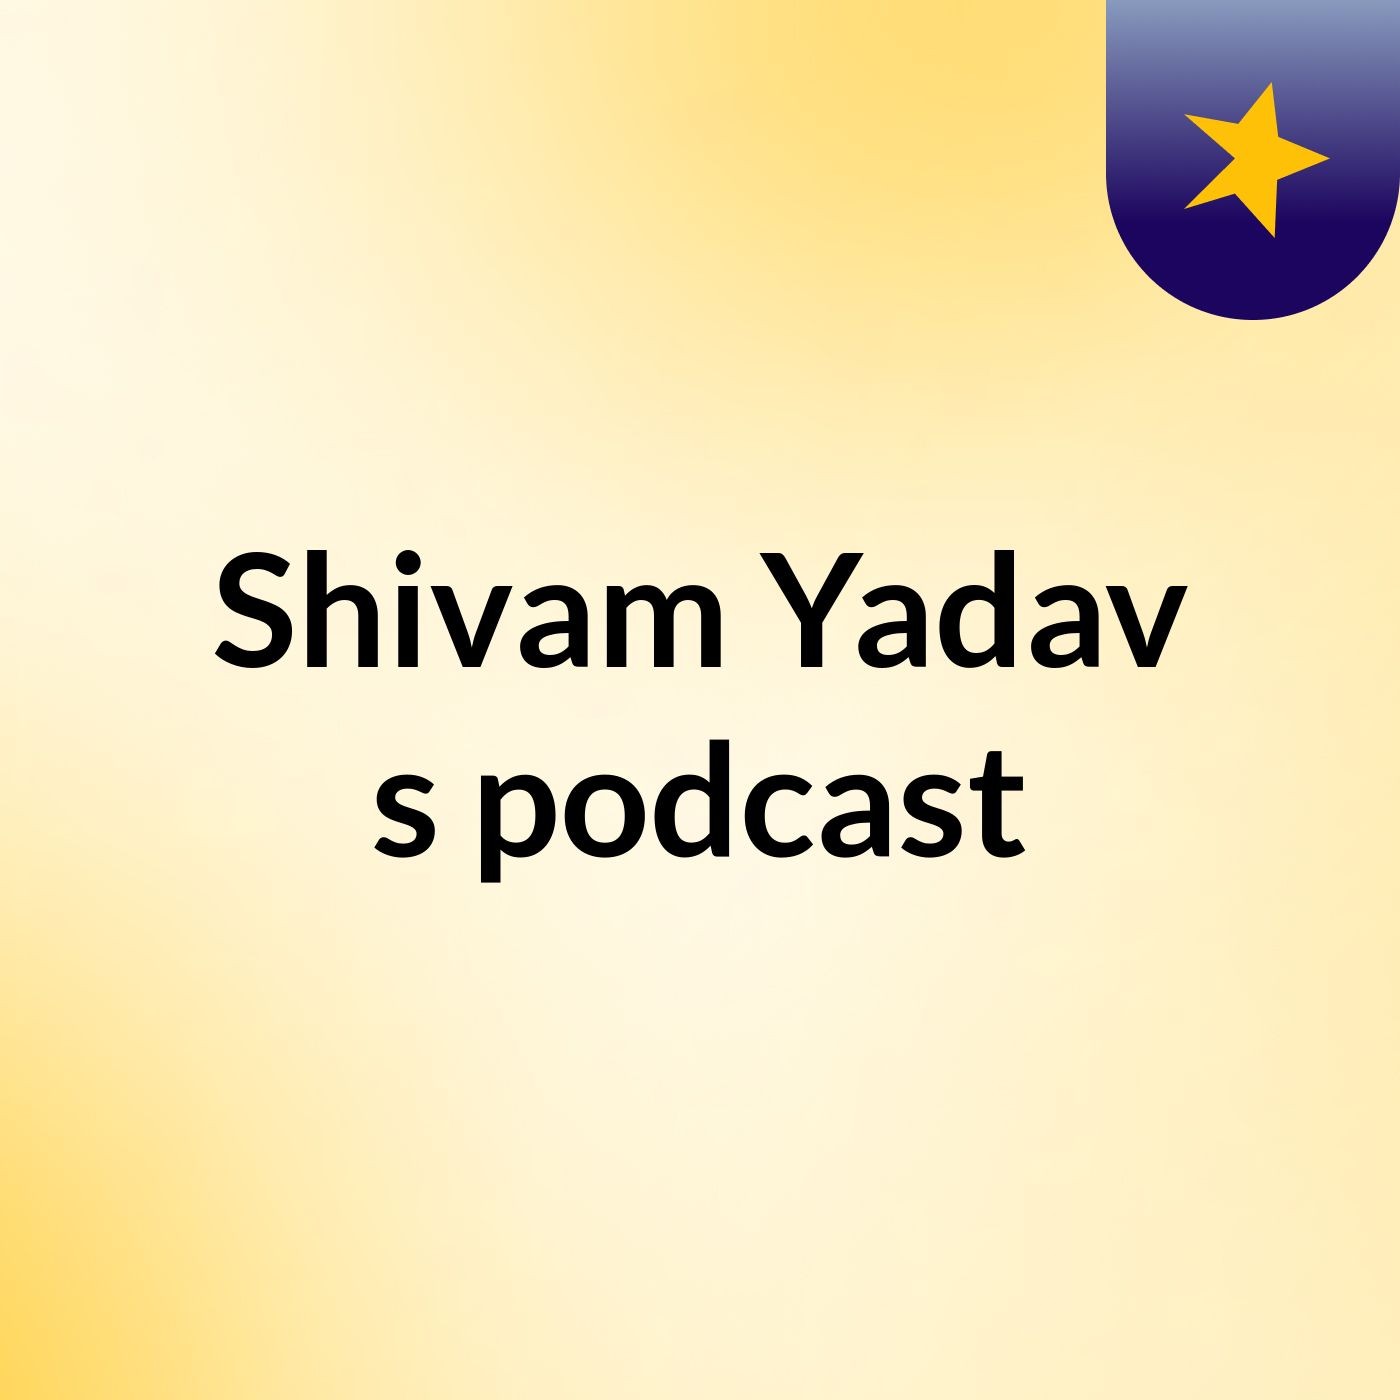 Episode 3 - Shivam Yadav's podcast